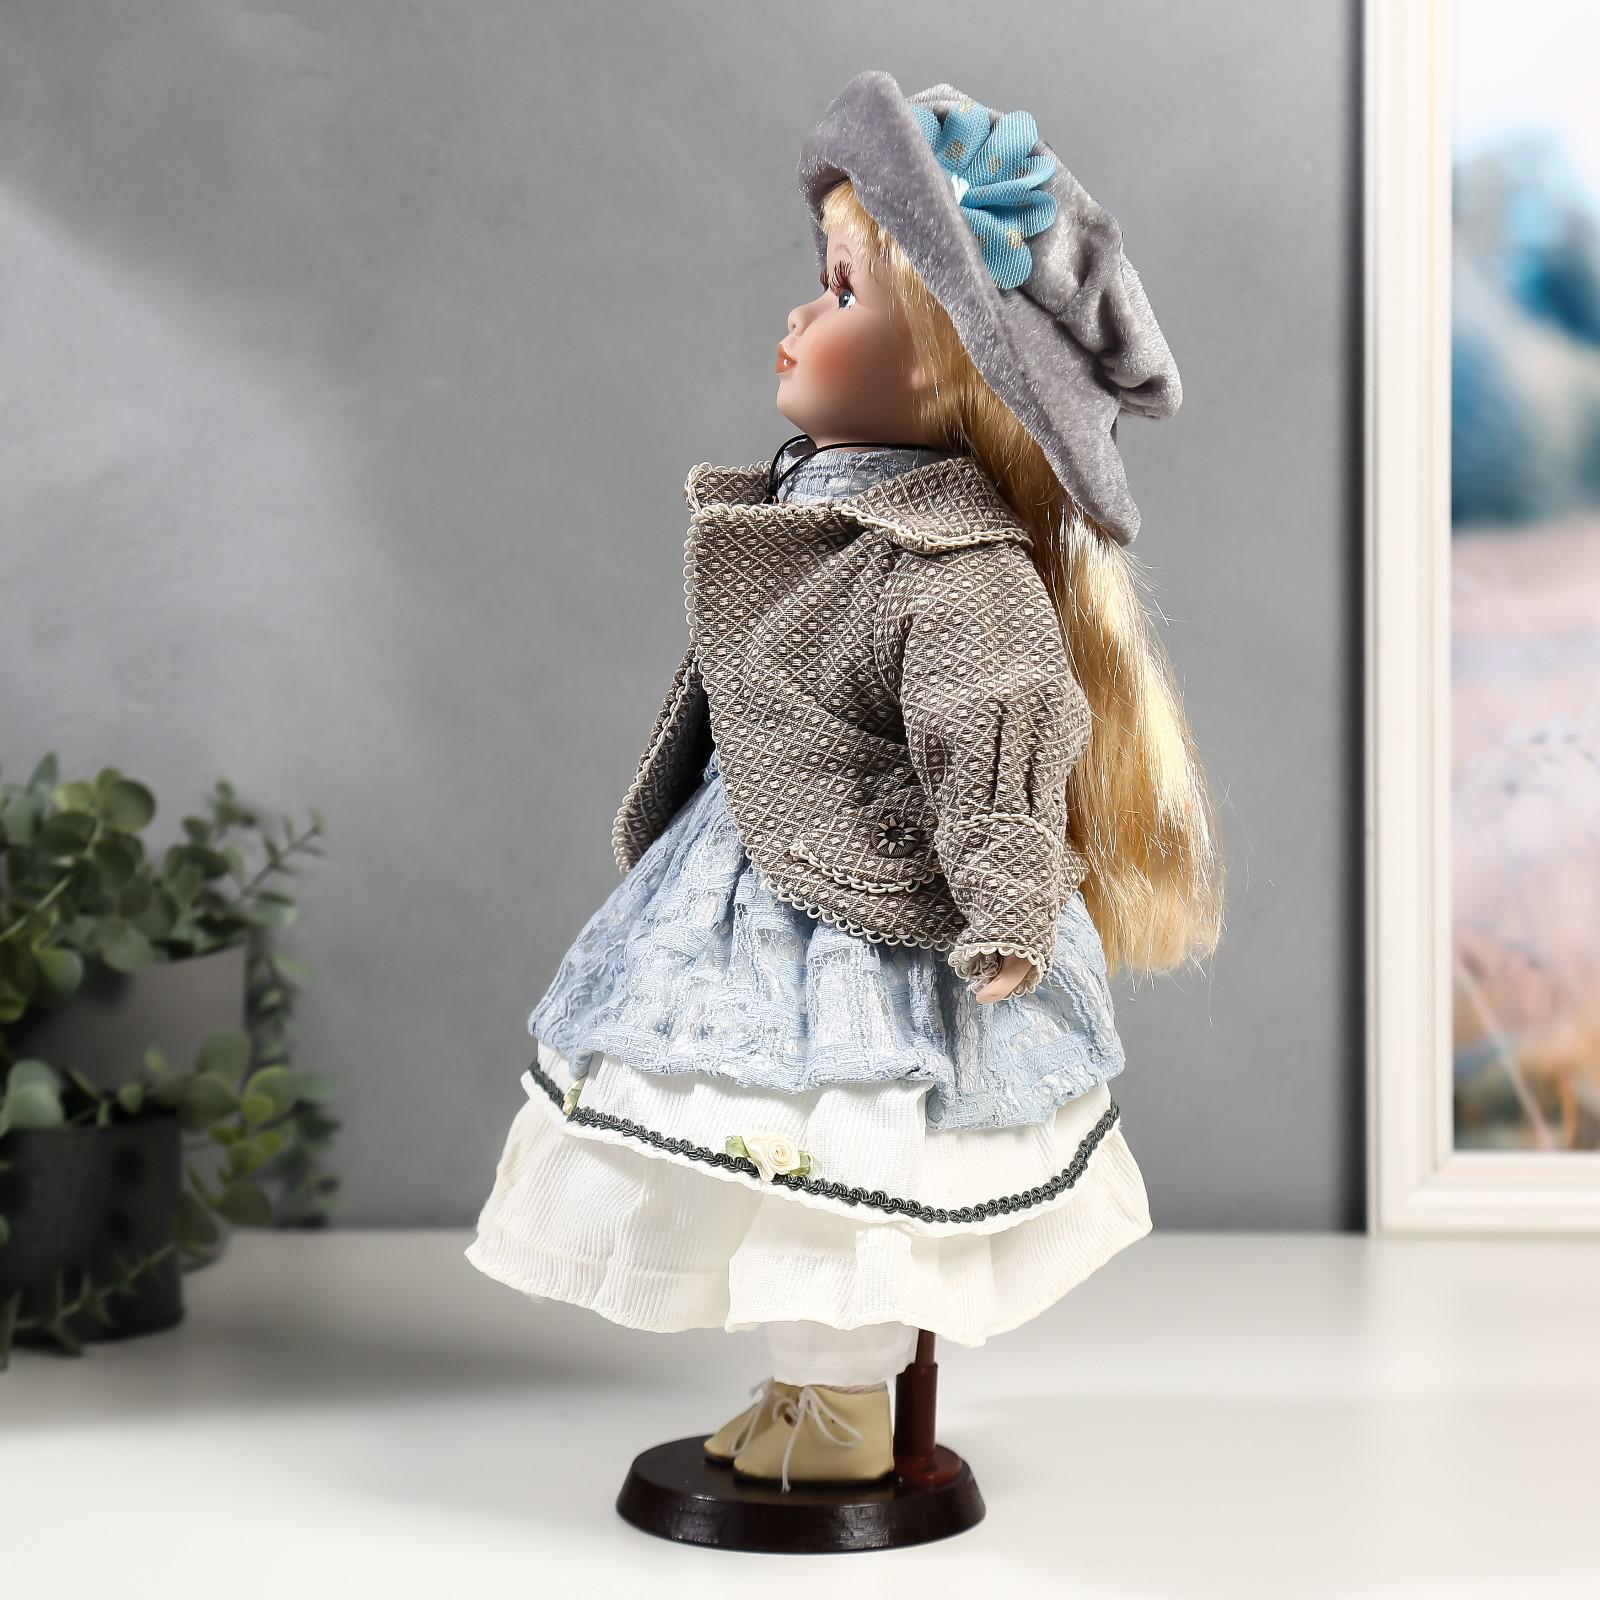 Кукла коллекционная Зимнее волшебство керамика «Лиза в голубом кружевном платье и серой курточке» 40 см - фото 3